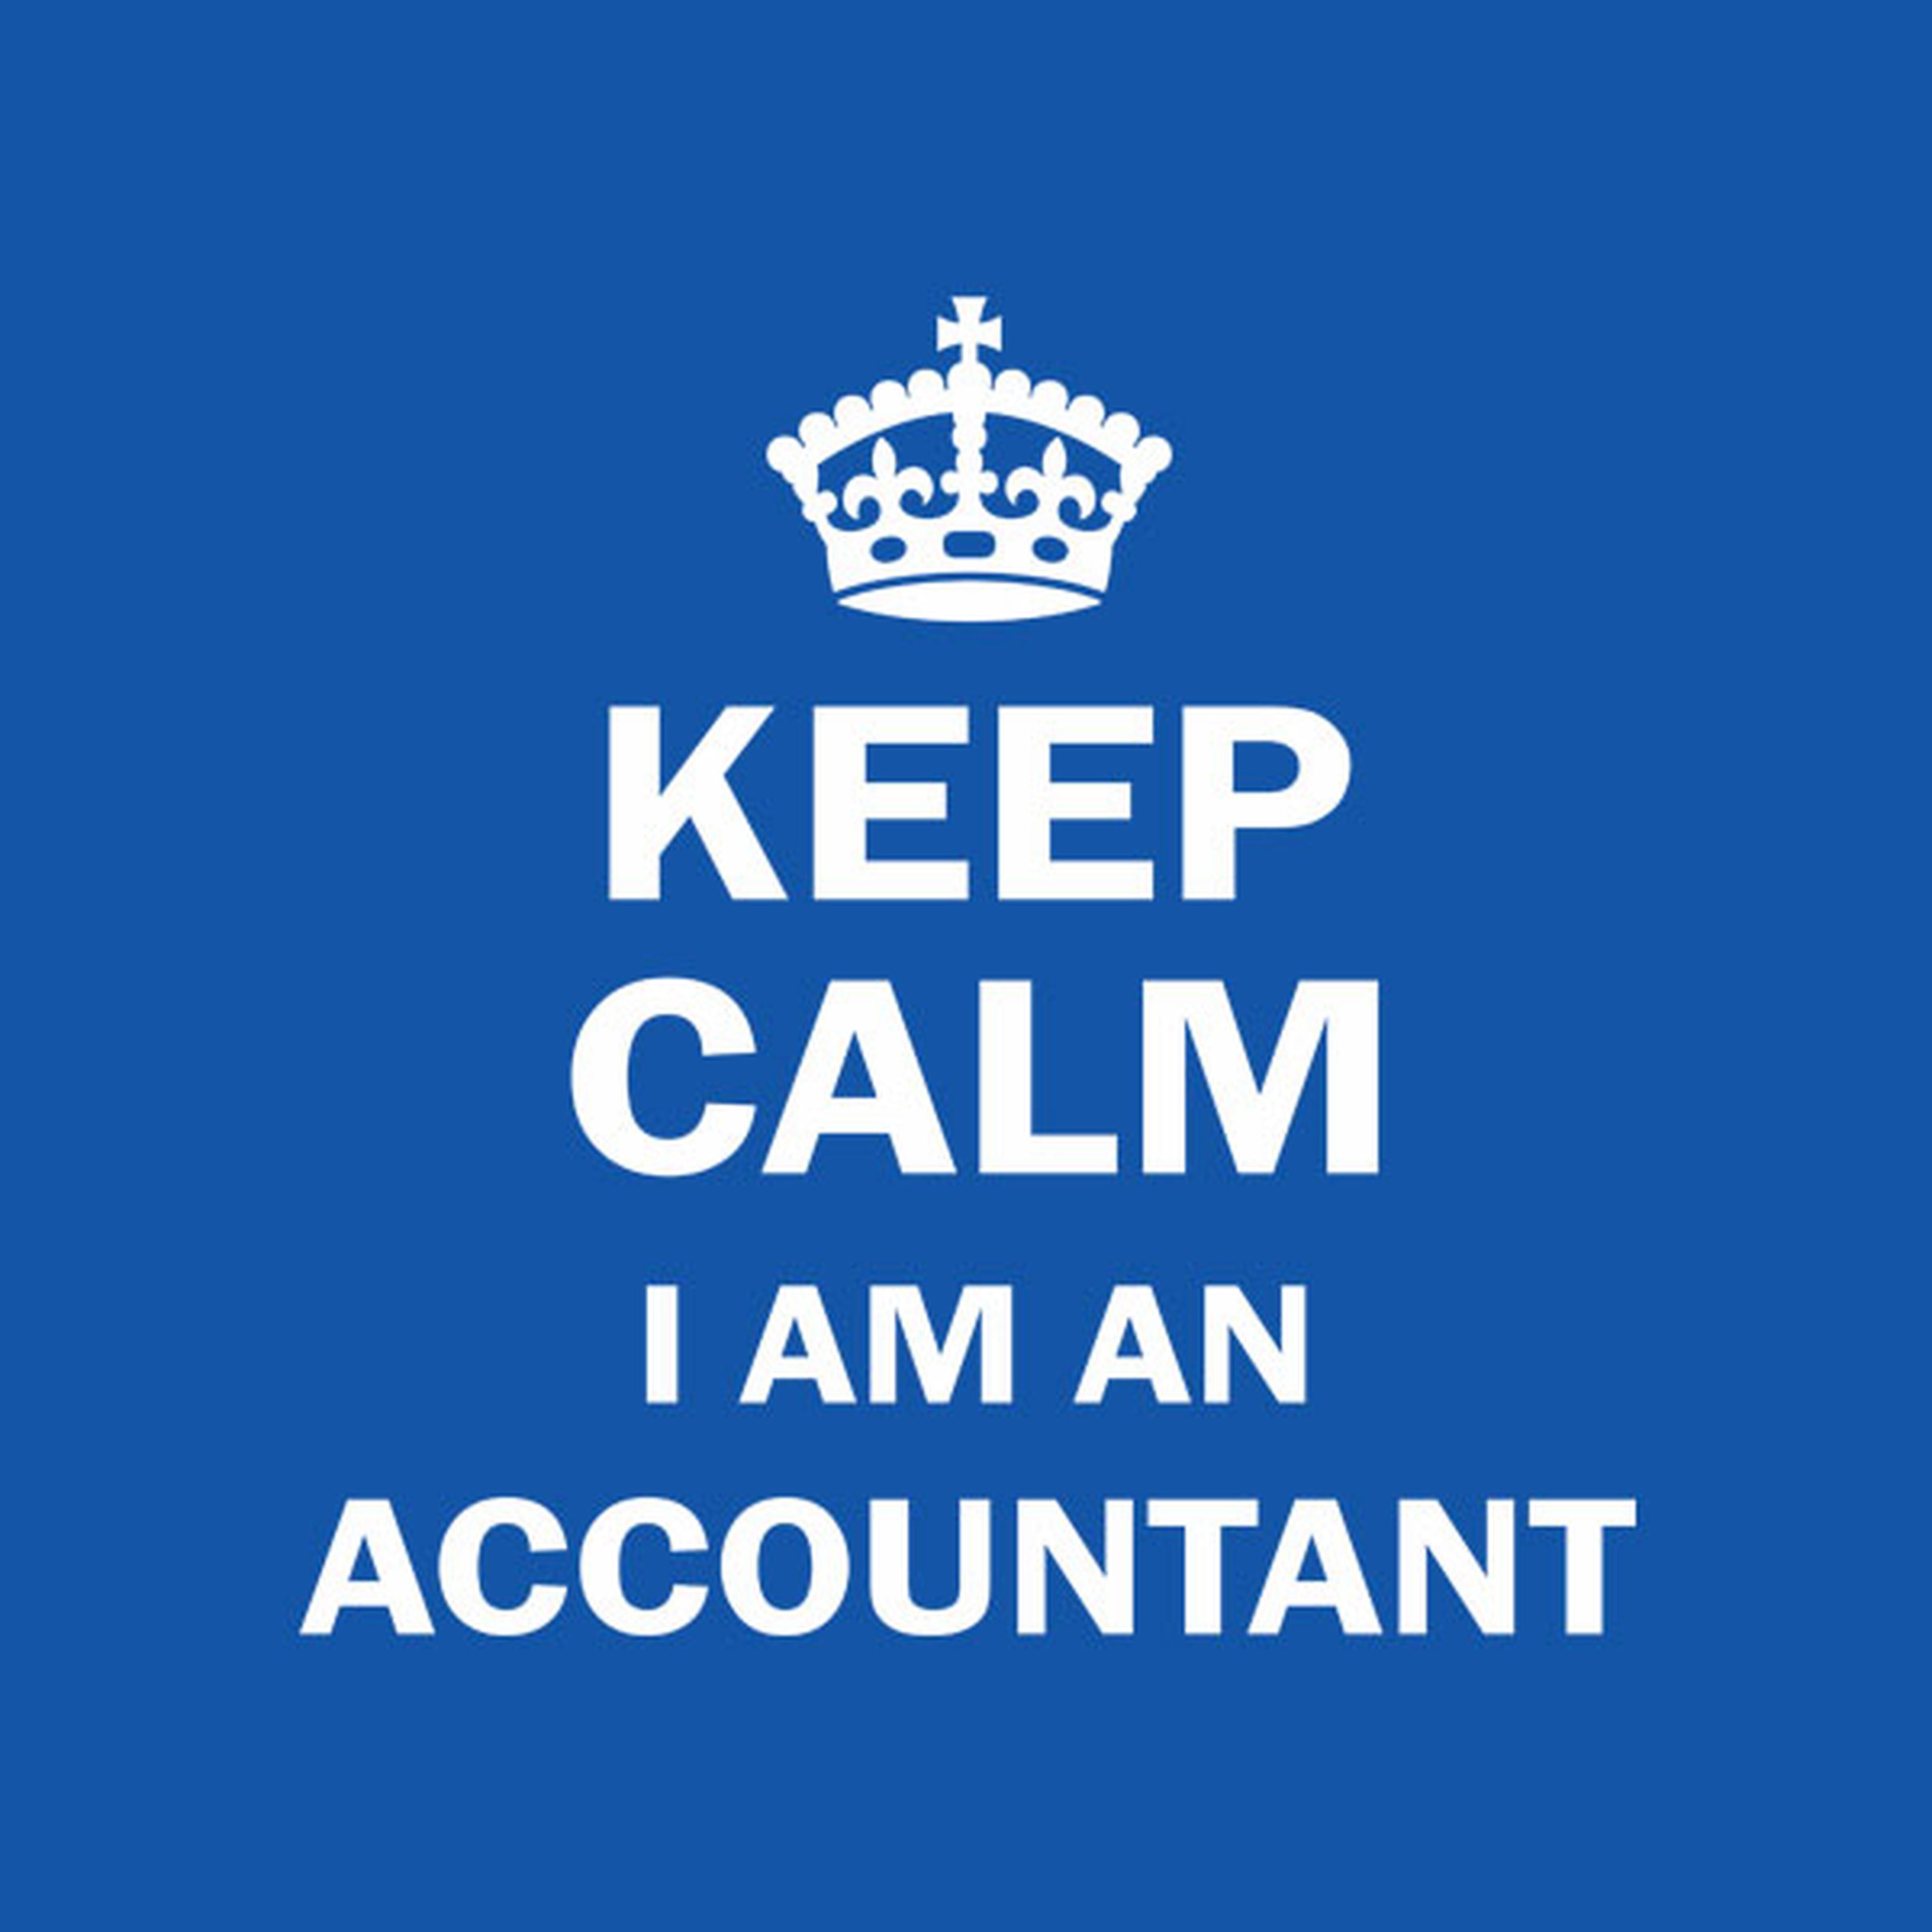 Keep calm. I am an accountant T-shirt